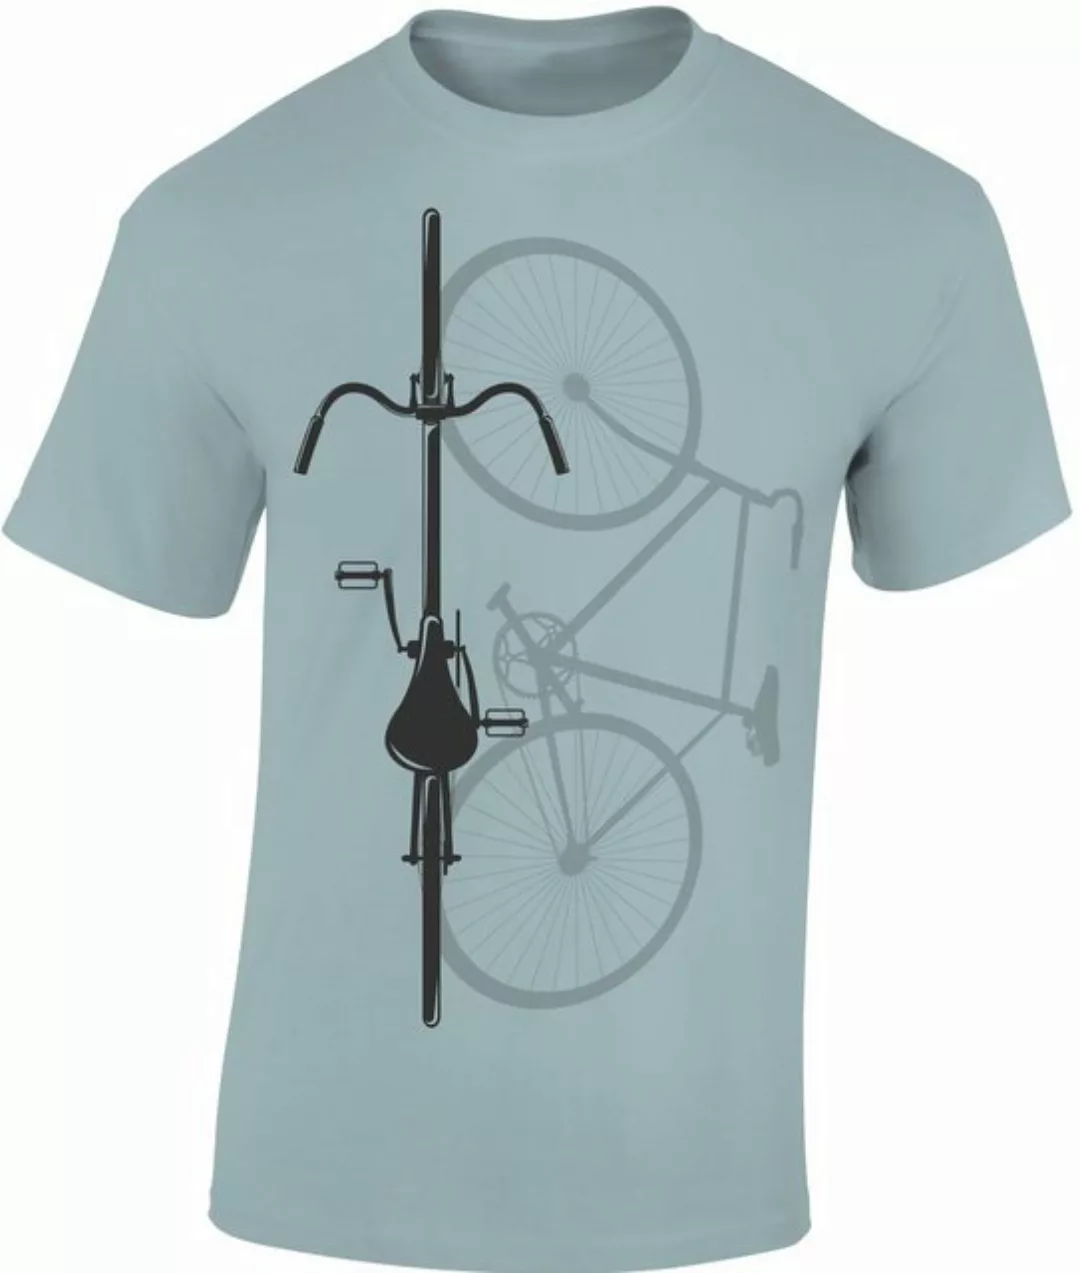 Baddery Print-Shirt Fahrrad T-Shirt : Bike Shadow - Sport Tshirts Herren - günstig online kaufen